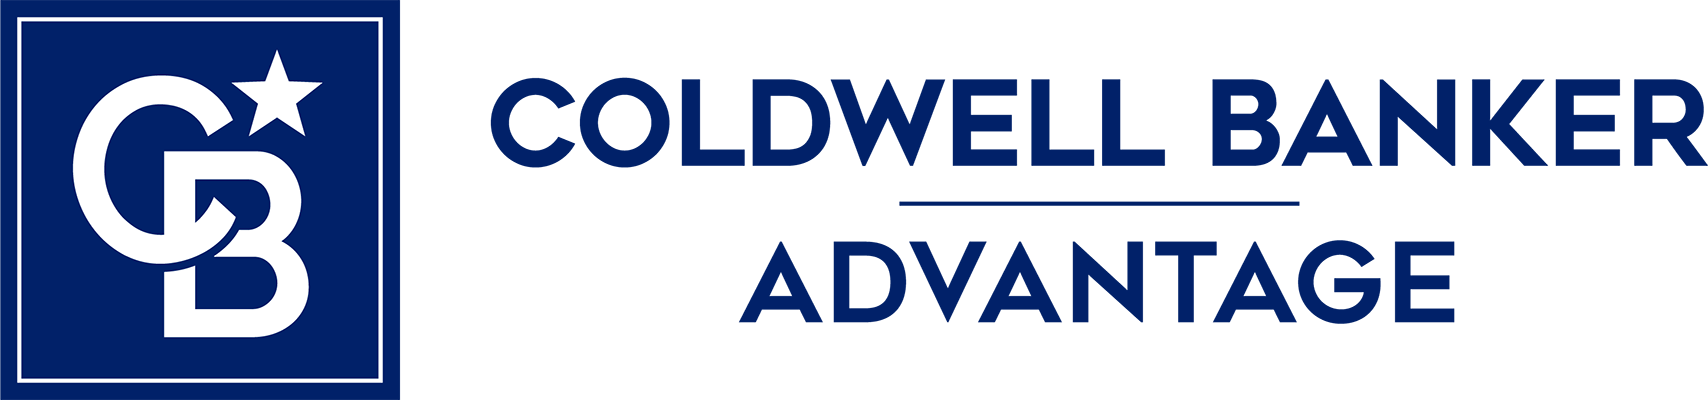 Mike Richmond - Coldwell Banker Advantage Logo